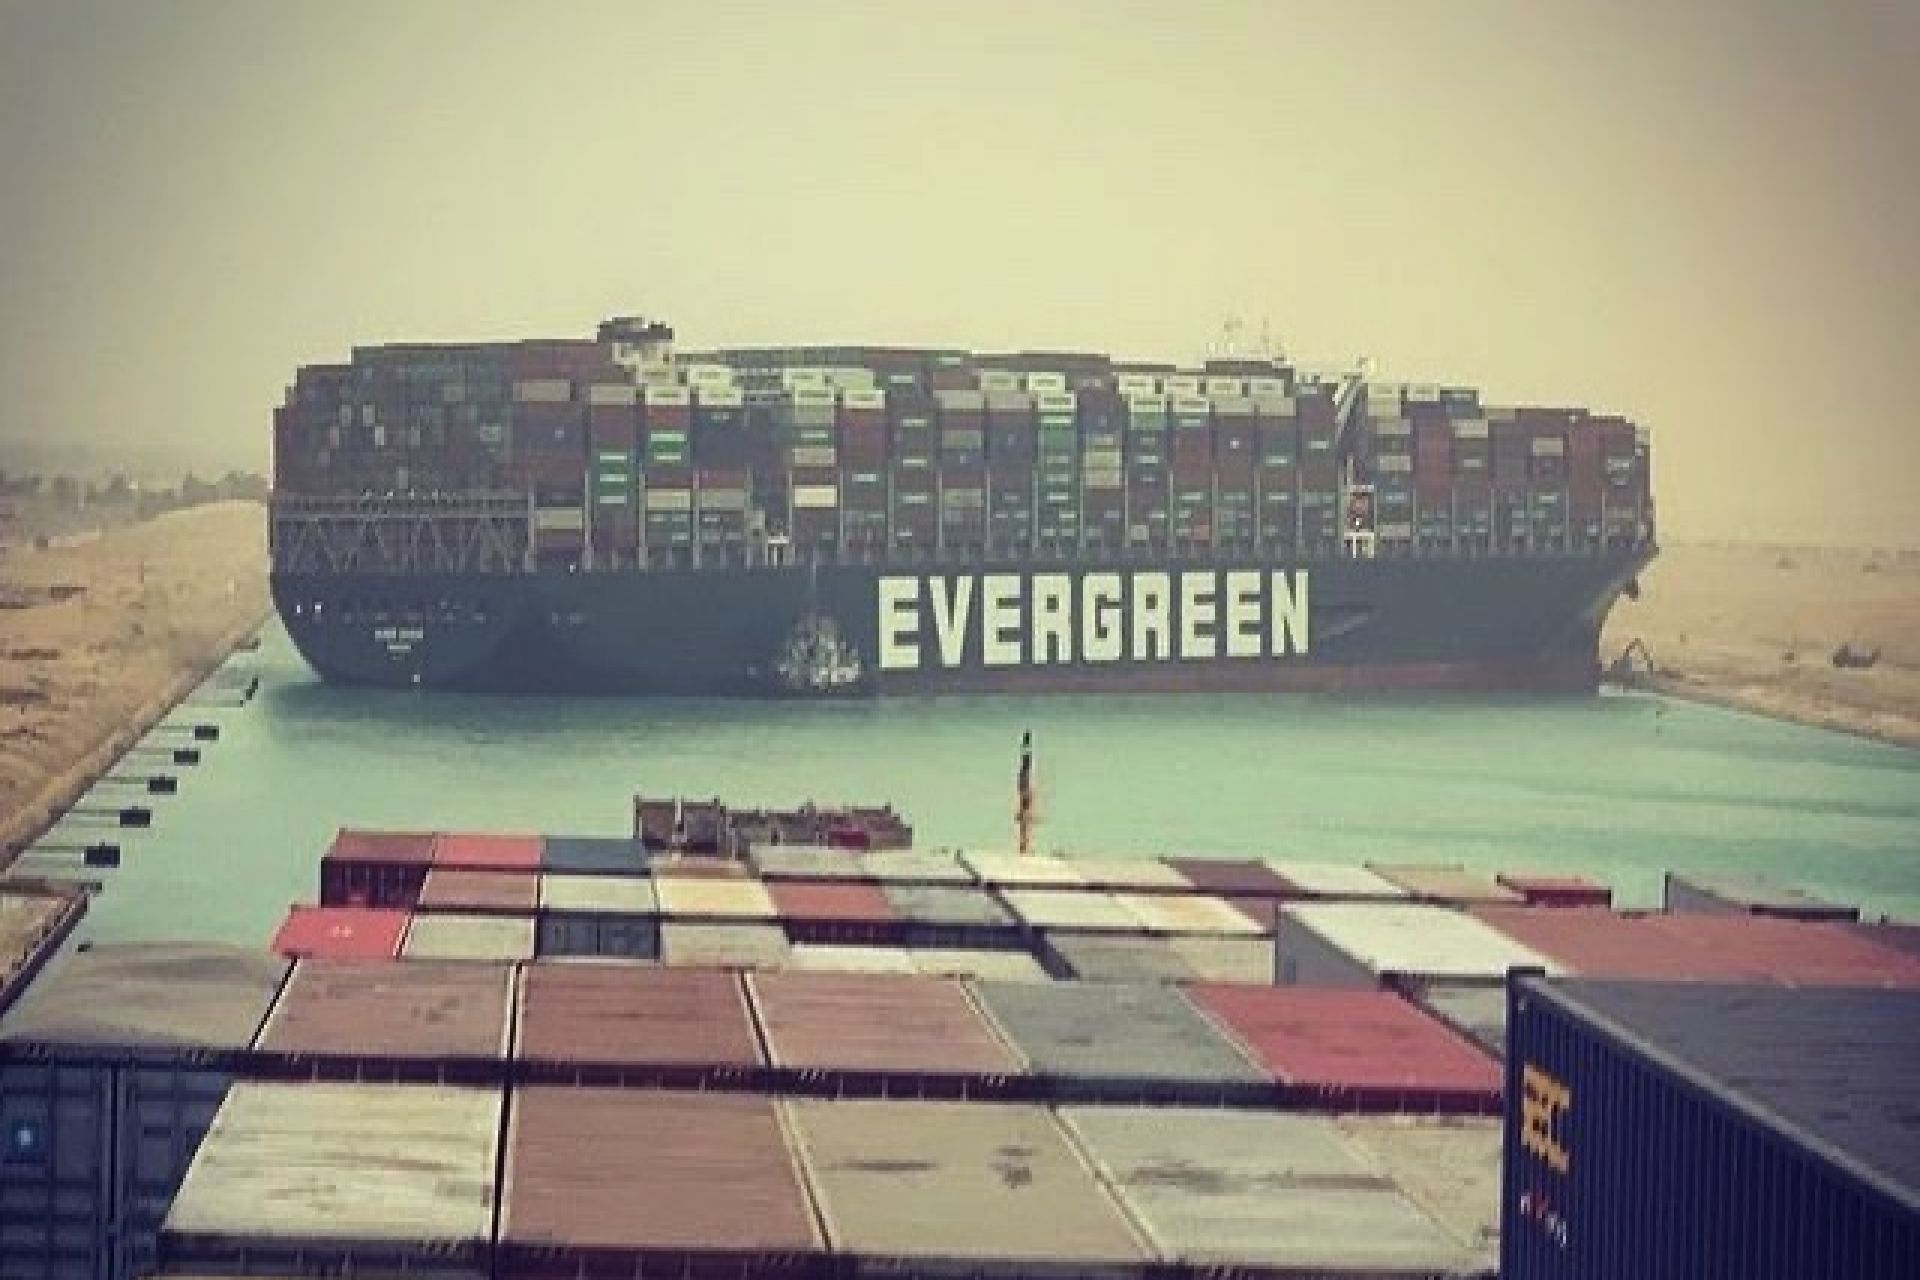 Süveyş Kanalı 7. gündə qismən açıldı: Evergreen şirkətinə aid Ever Given gəmisi üzdürüldü